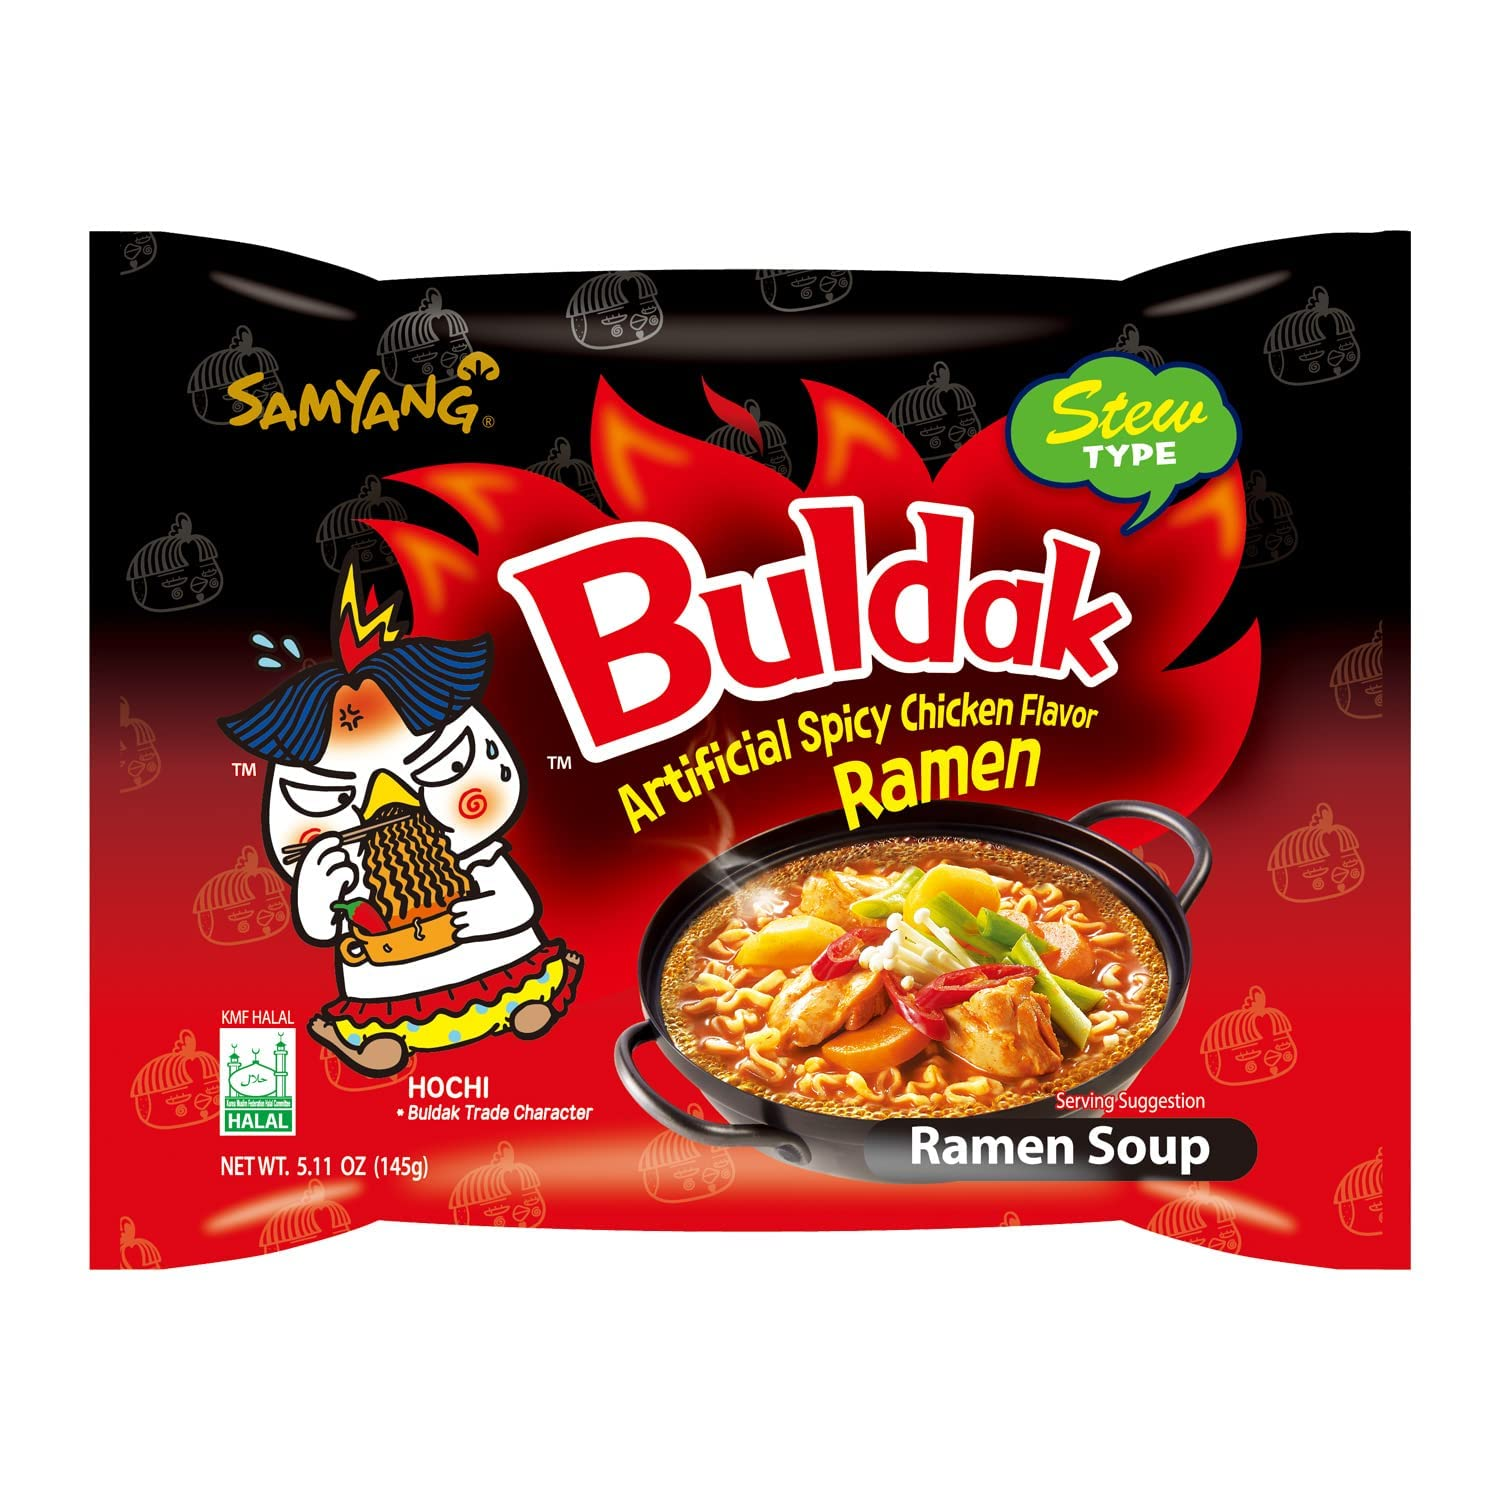 Samyang Buldak Stew Korean Spicy Hot Chicken Stir-Fried Noodles